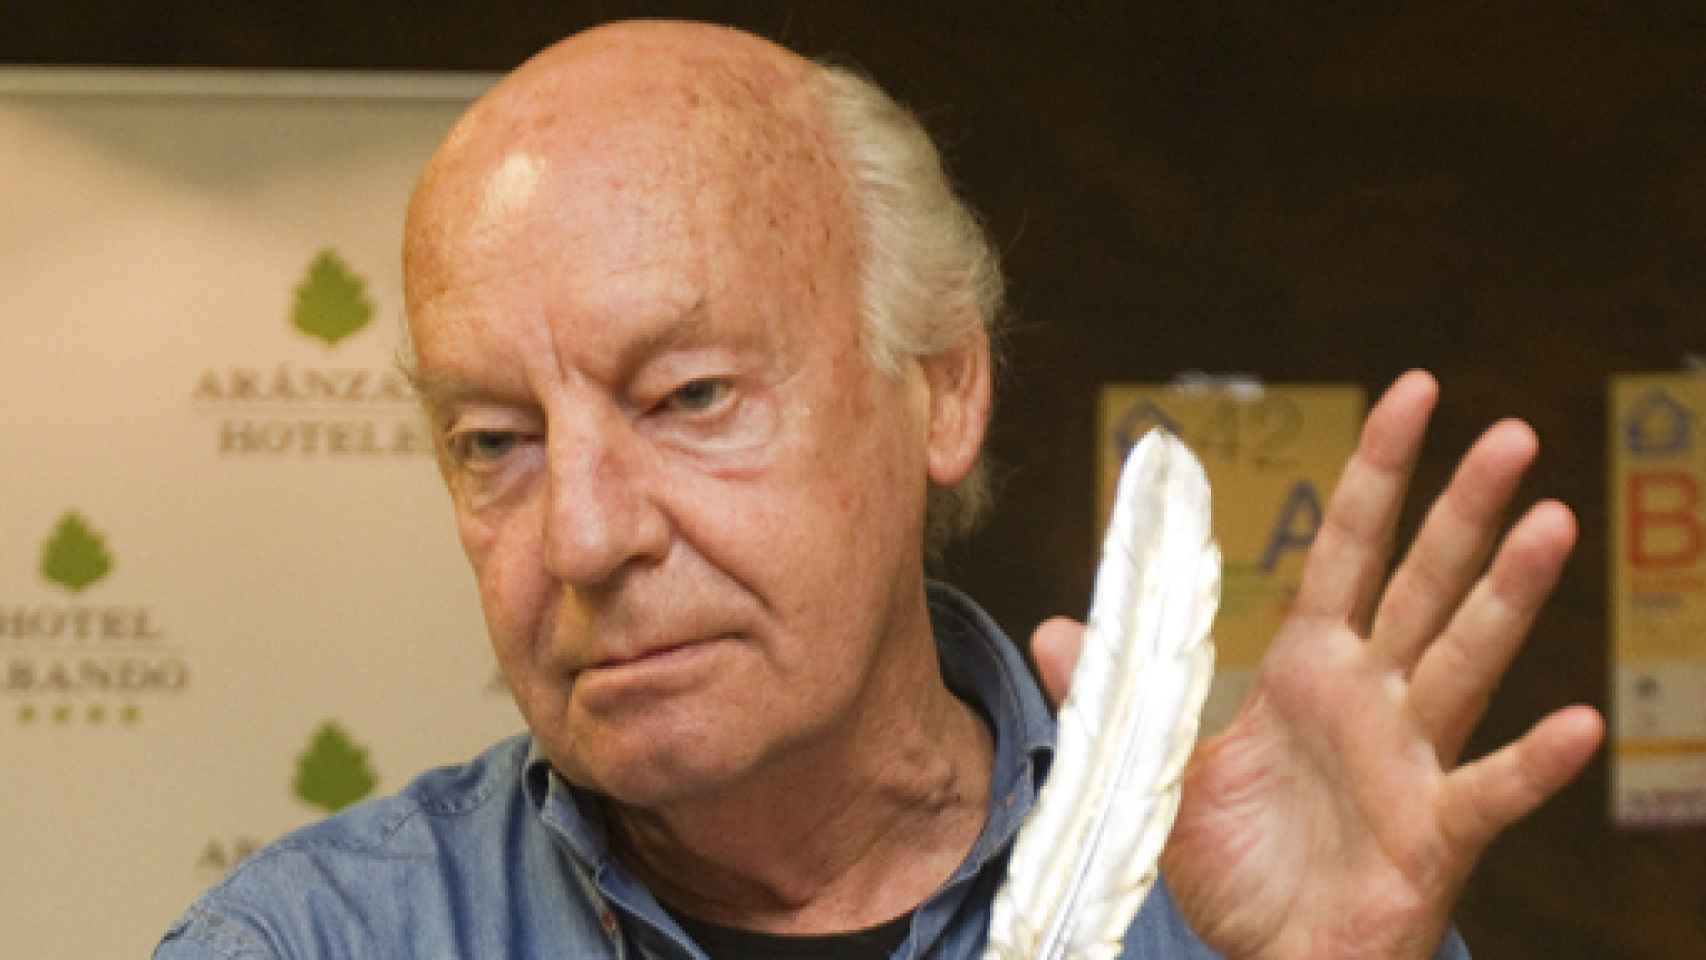 Image: Muere Eduardo Galeano a los 74 años